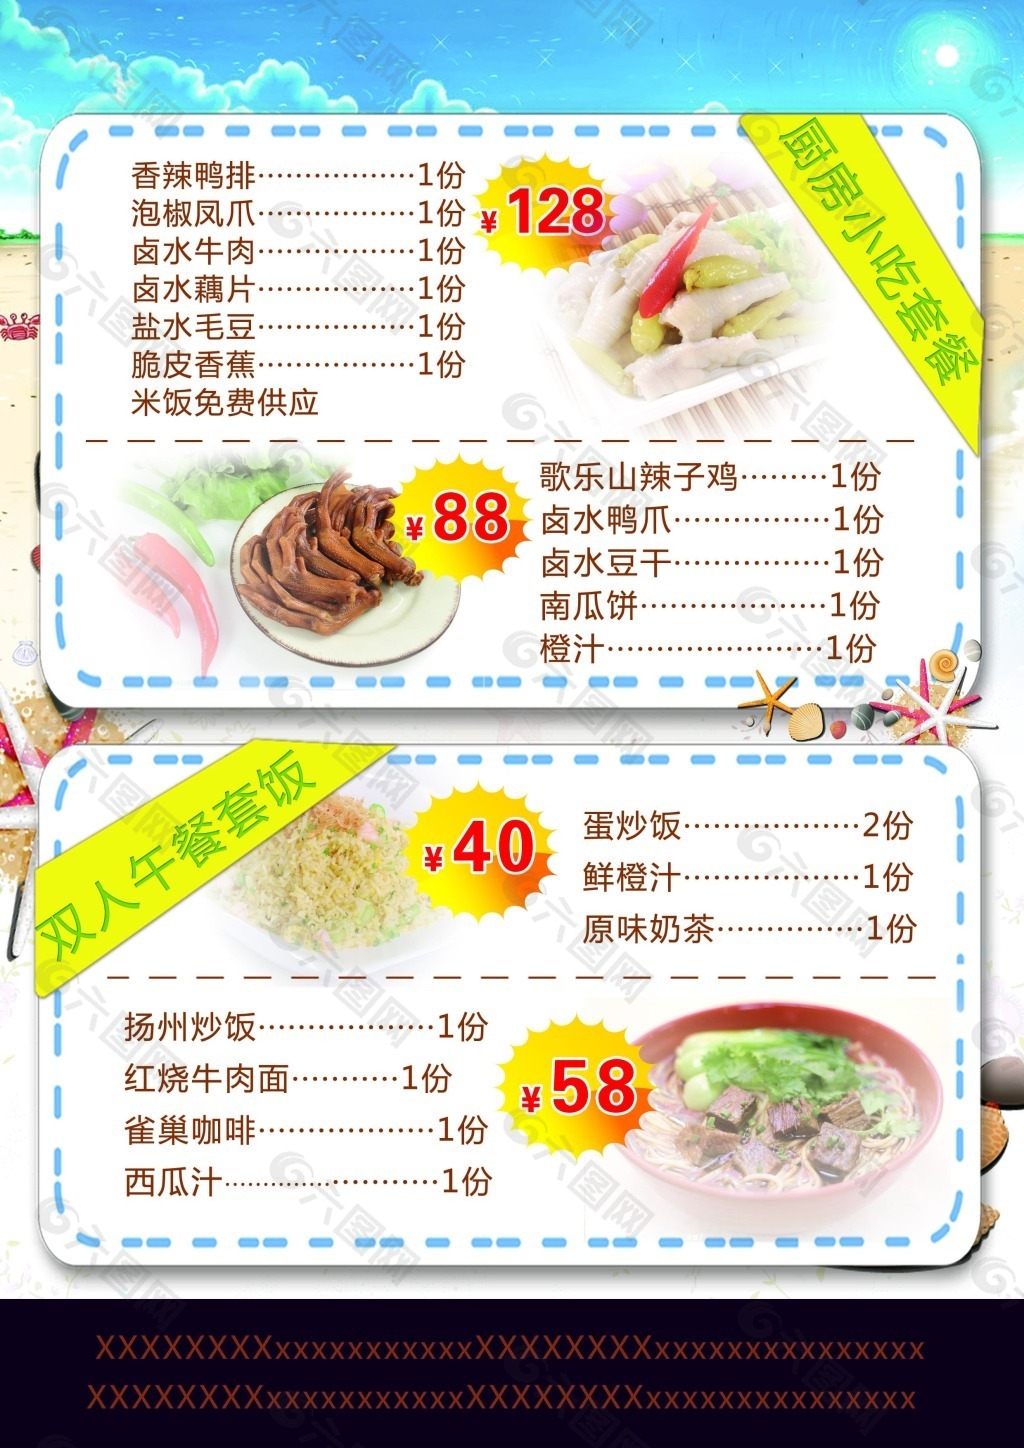 中餐零点菜单模板图片